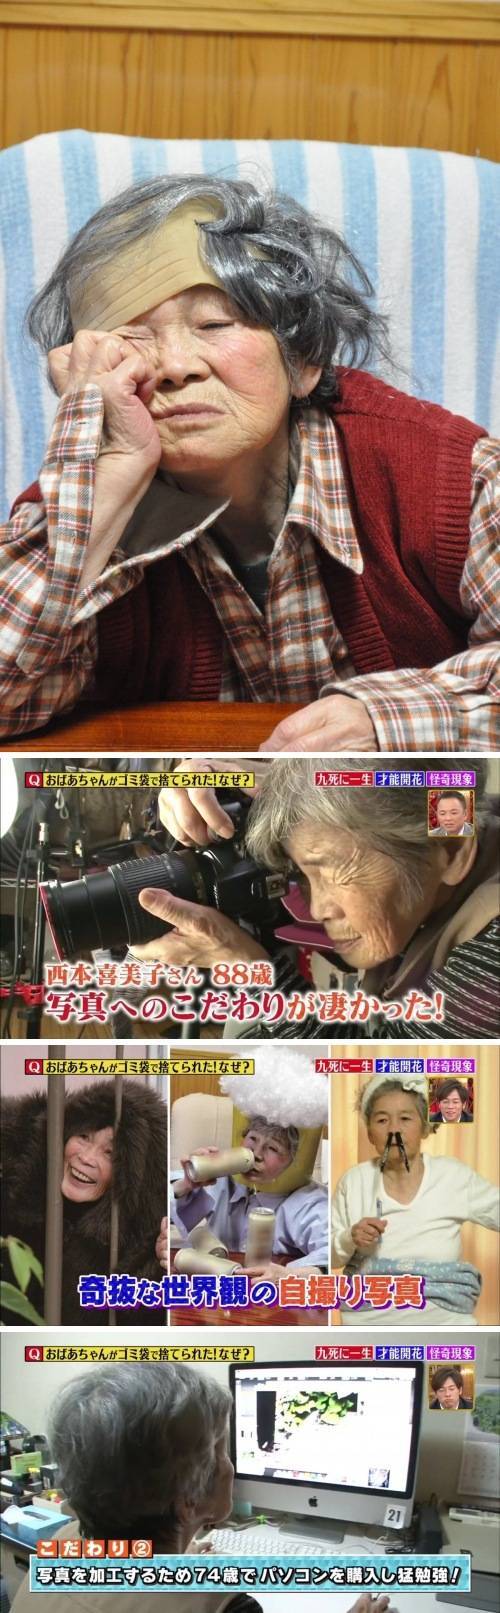 일본의 88세 셀카 할머니...jpg